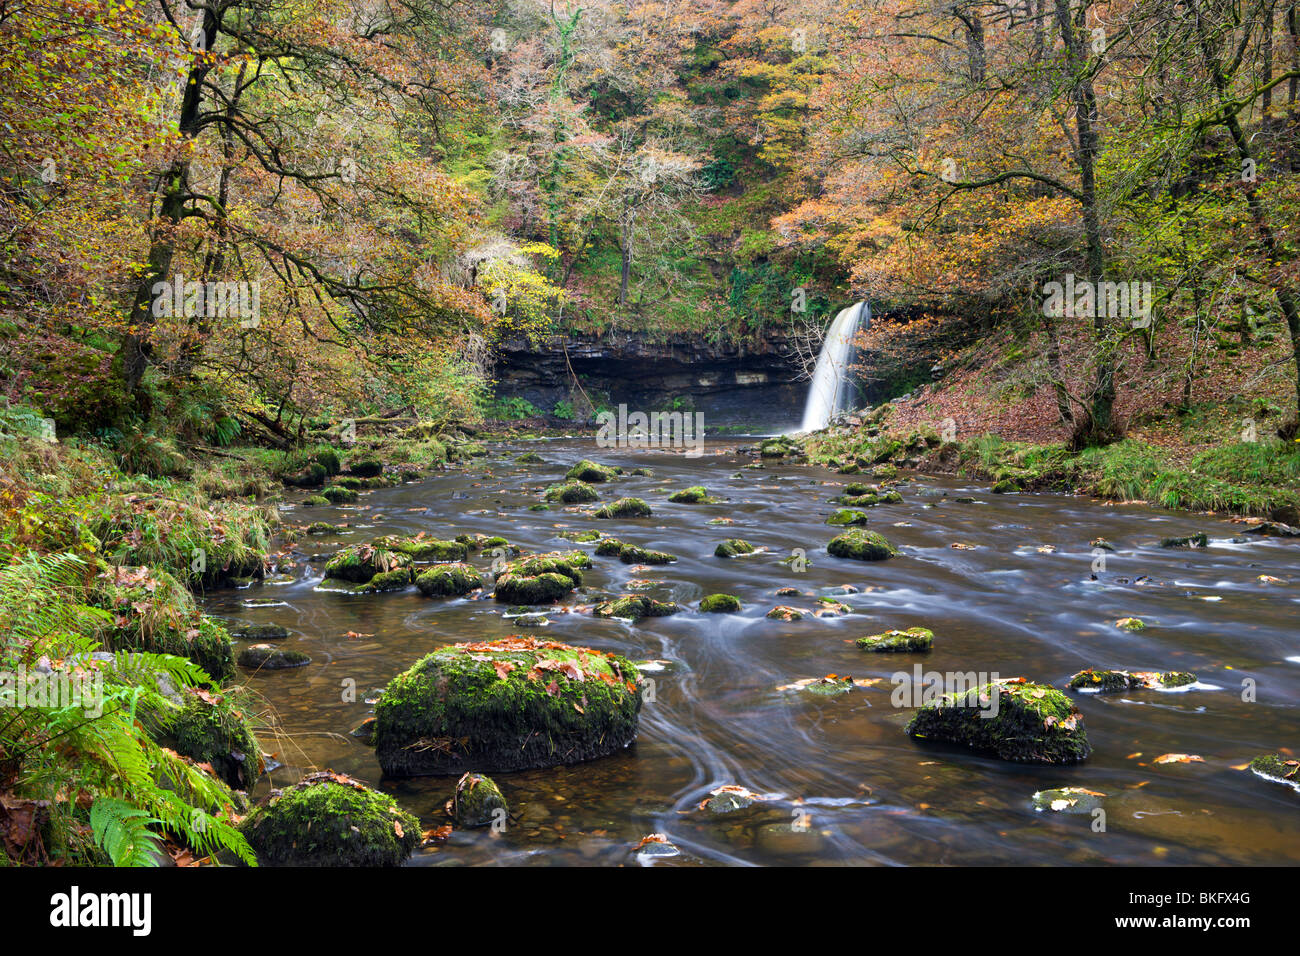 Sgwd Gwladus Wasserfall umgeben von herbstlichen Laub, in der Nähe von Ystradfellte, Brecon Beacons National Park, Powys, Wales, UK. Stockfoto